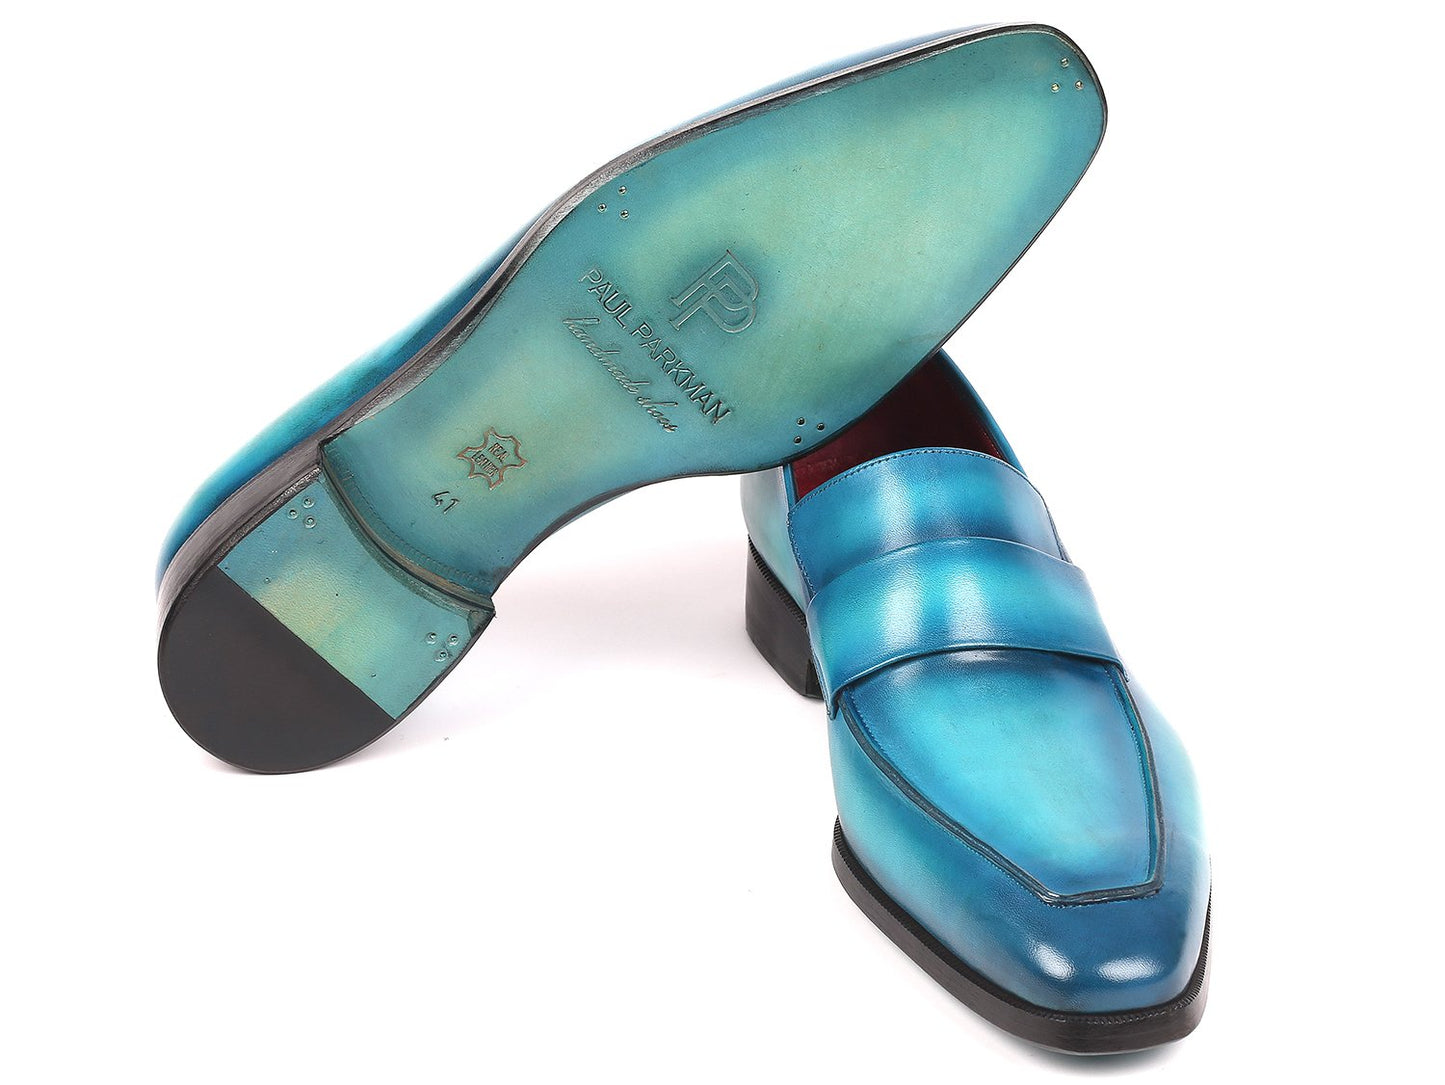 Paul Parkman Men's Loafers Turquoise (ID#093-TRQ)